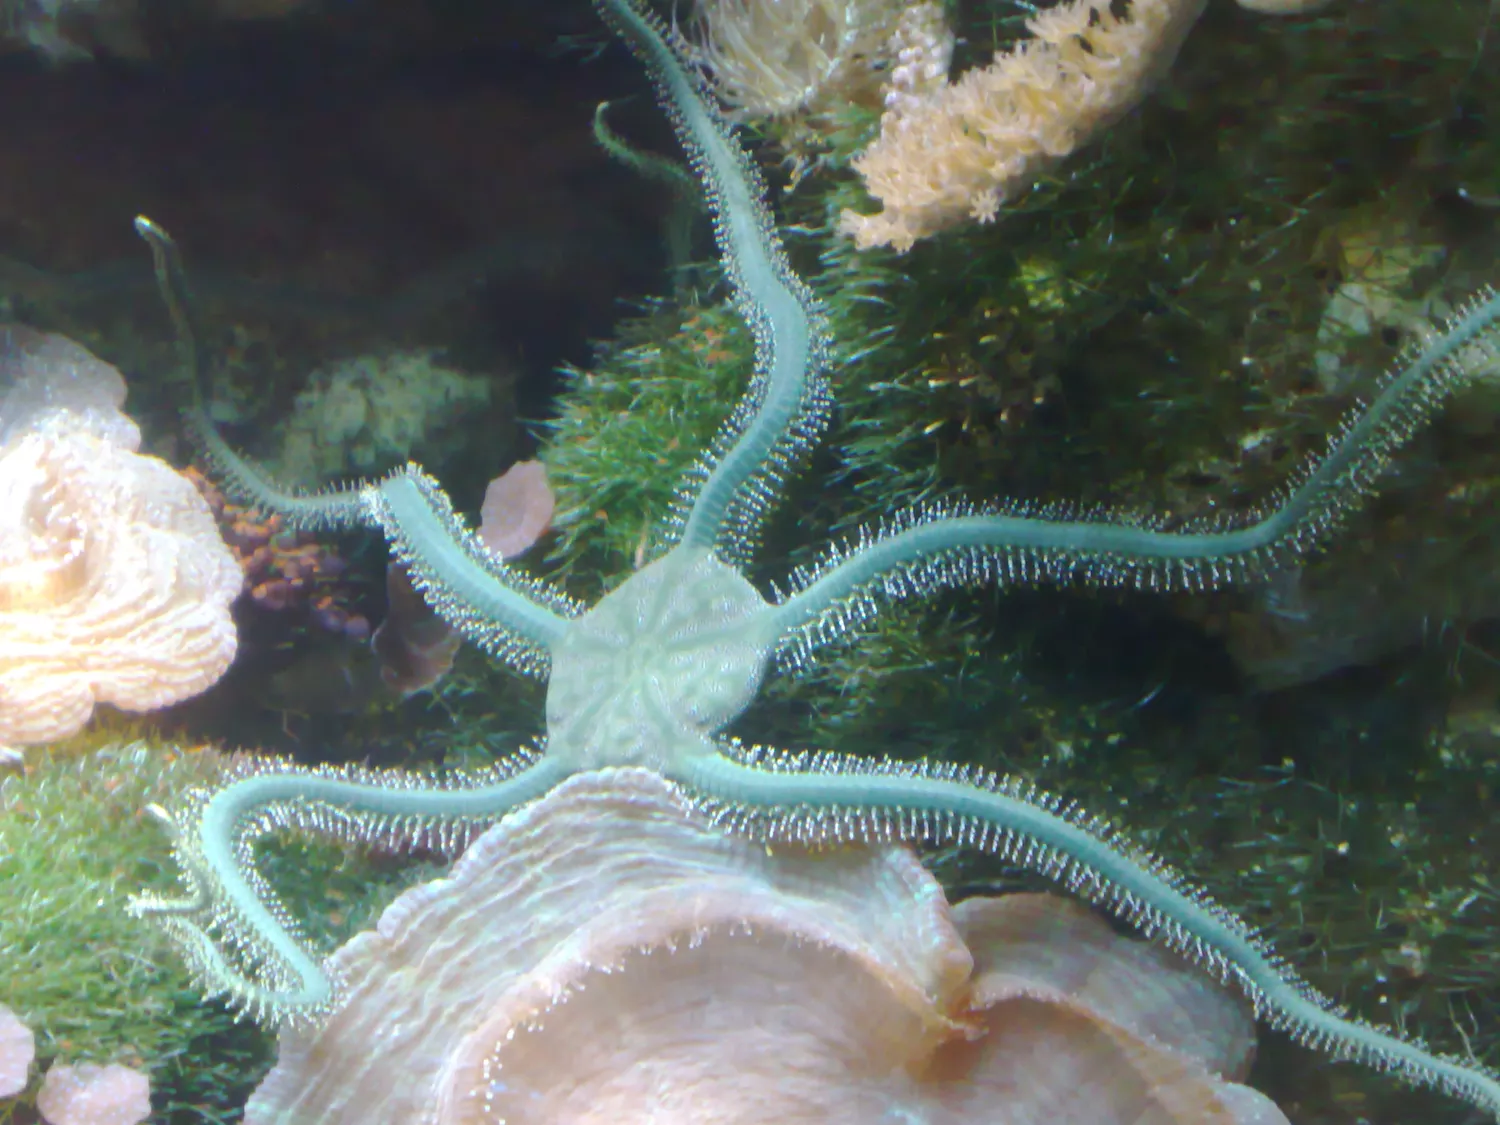 Бледно-зеленый офиур с пятью руками, распростертыми среди кораллов